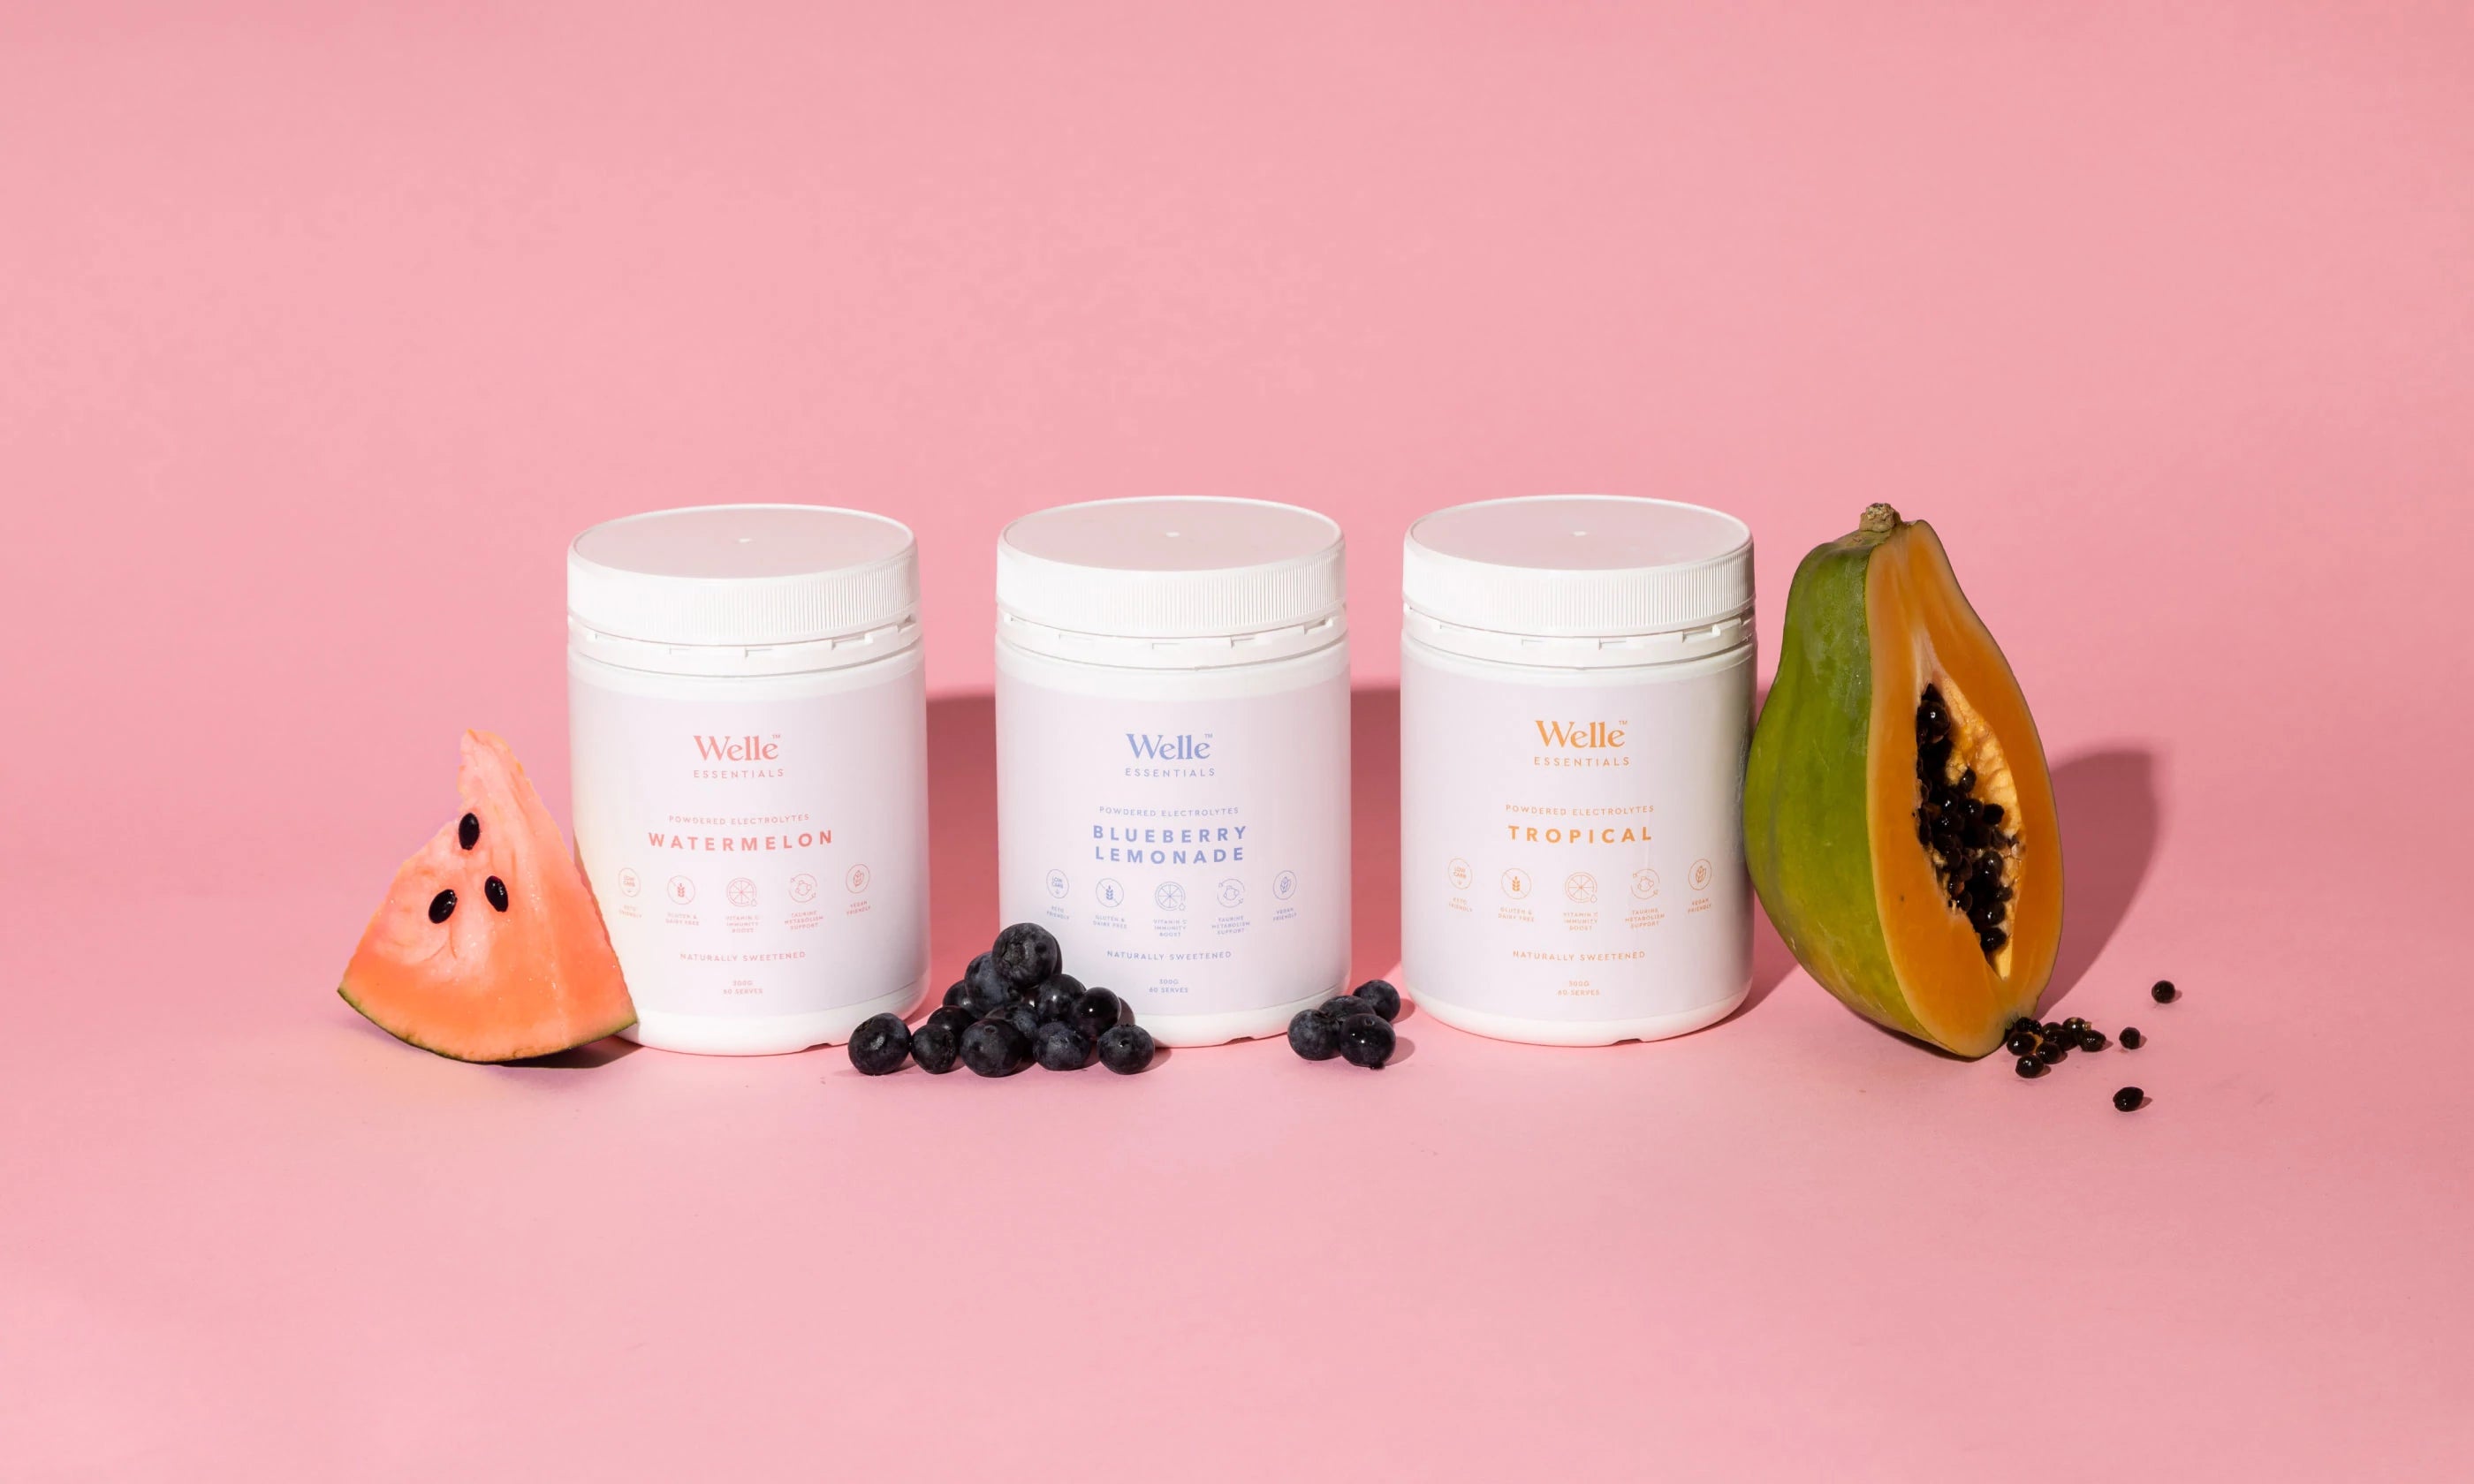 Electrolytes product range on pink background with fruit